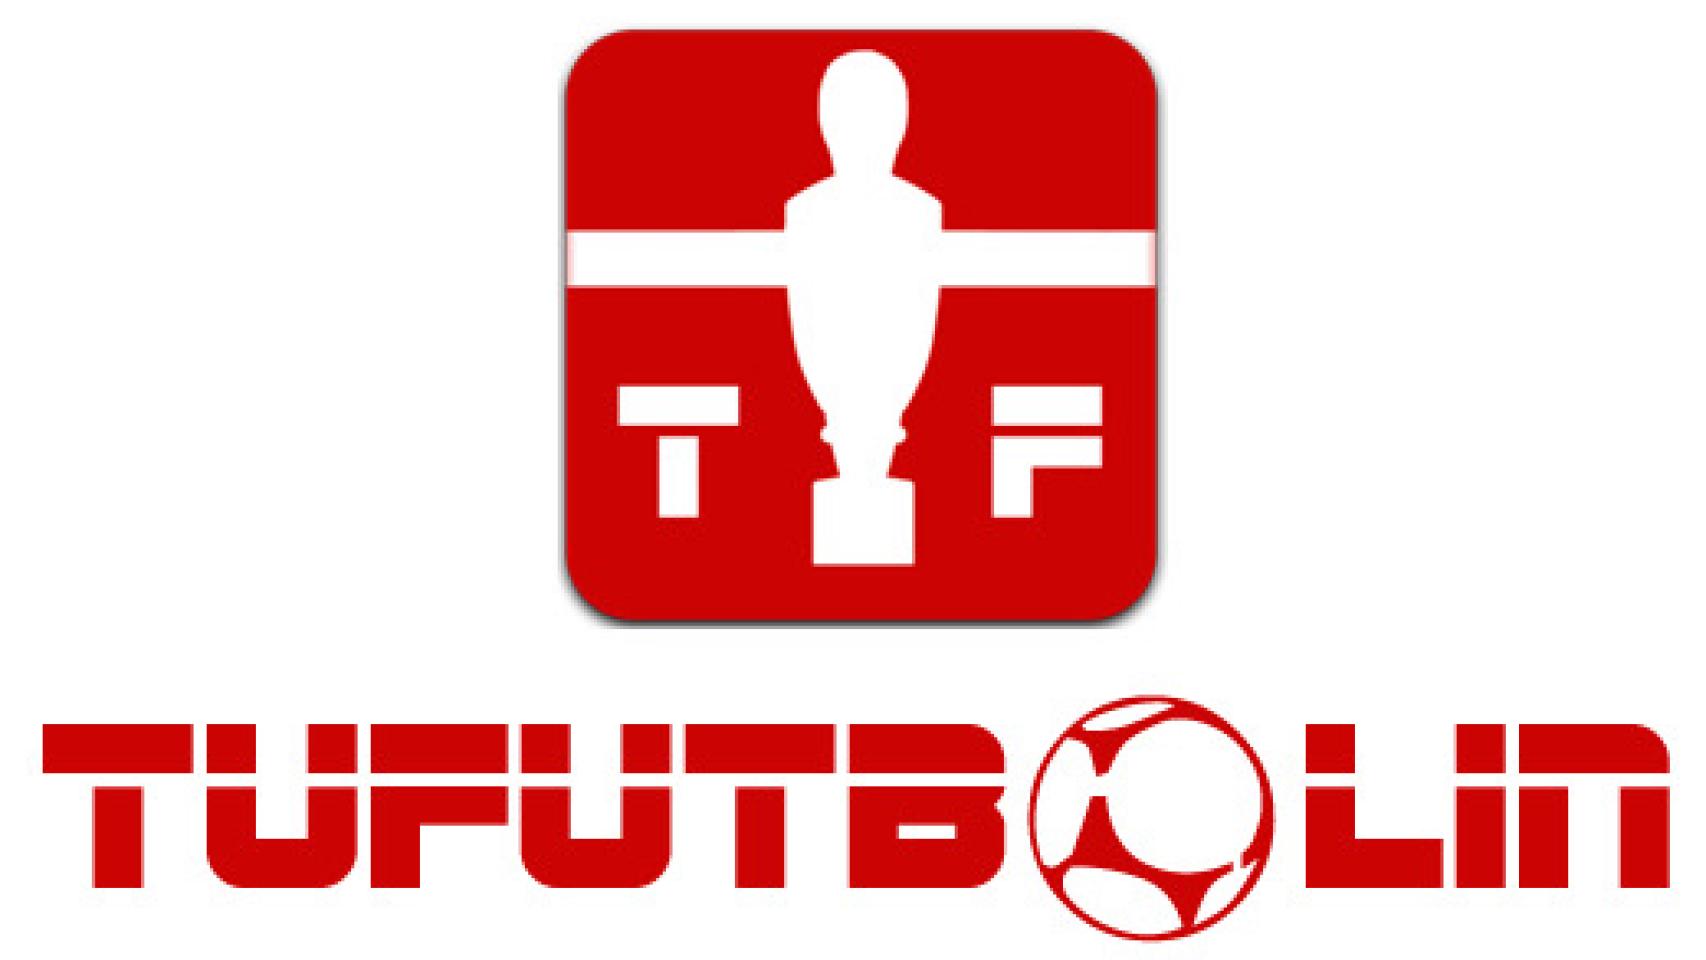 Las mejores noticias de Fútbol en Android: TuFutbolin.com – Estrenamos nuevo Blog, únete